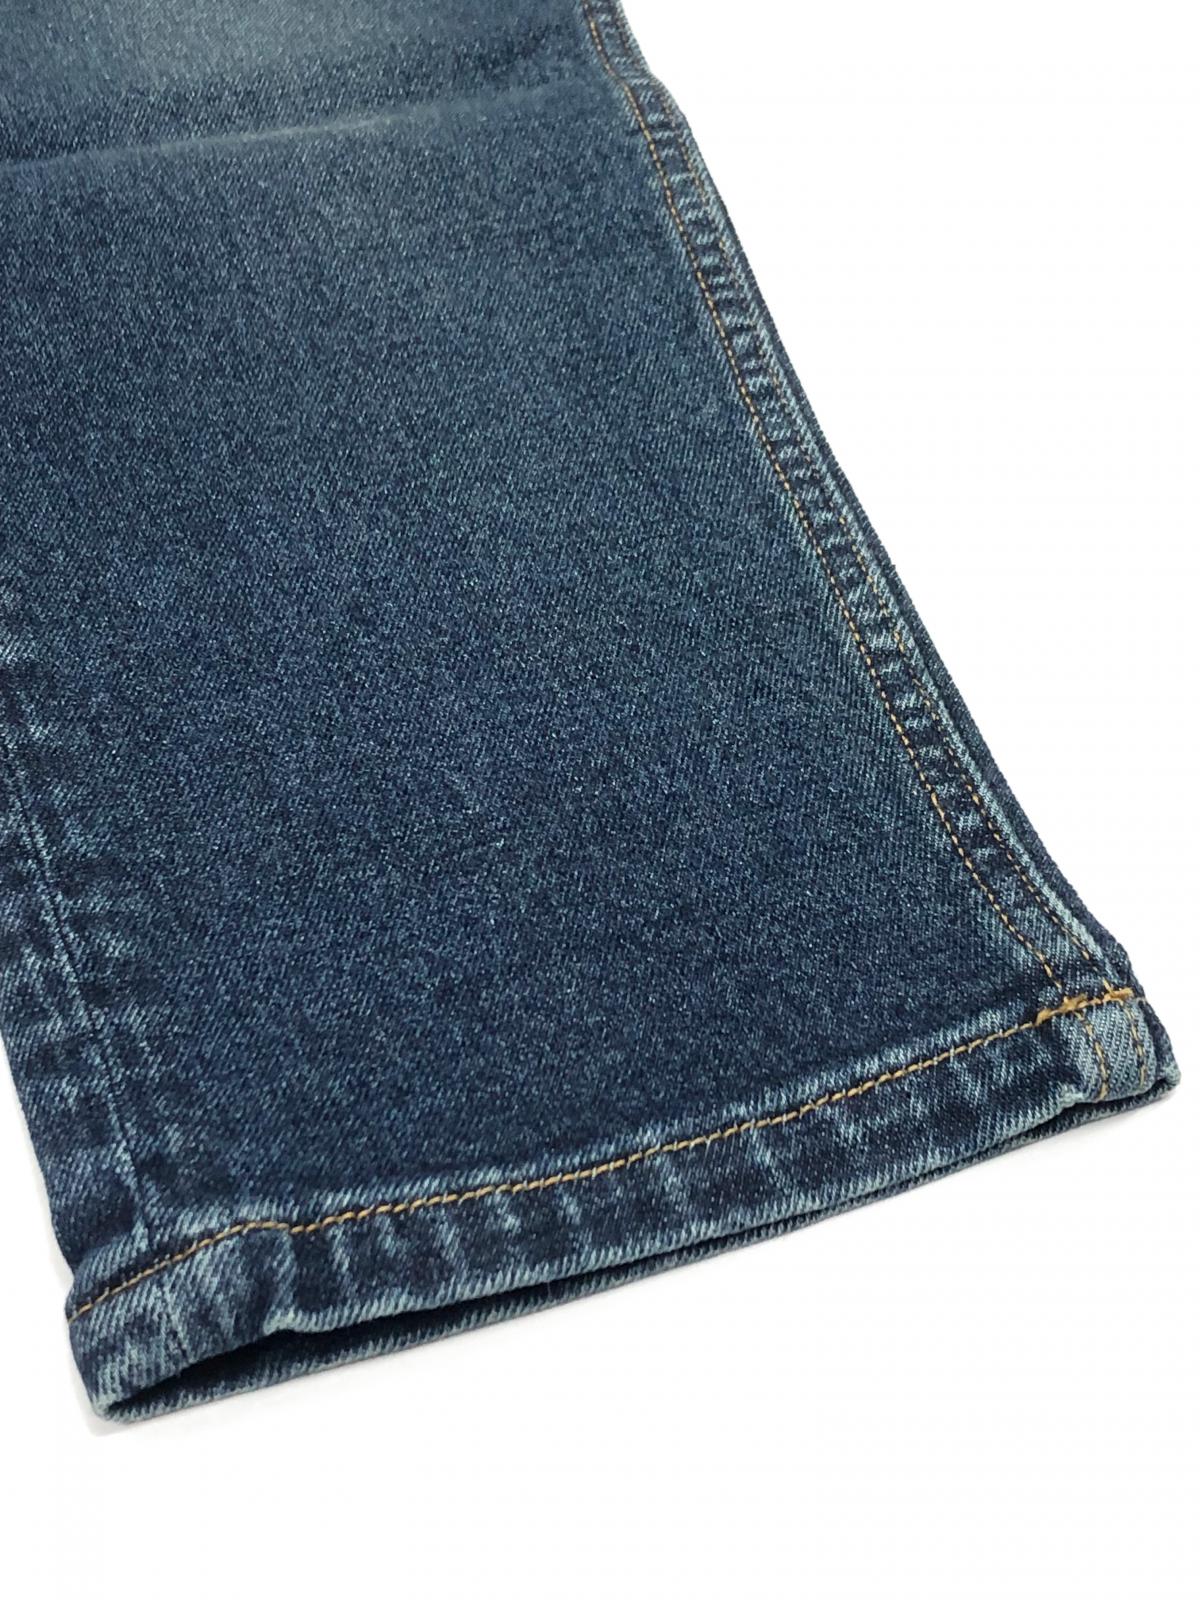 Men's Slimfit Jeans P0007 #4